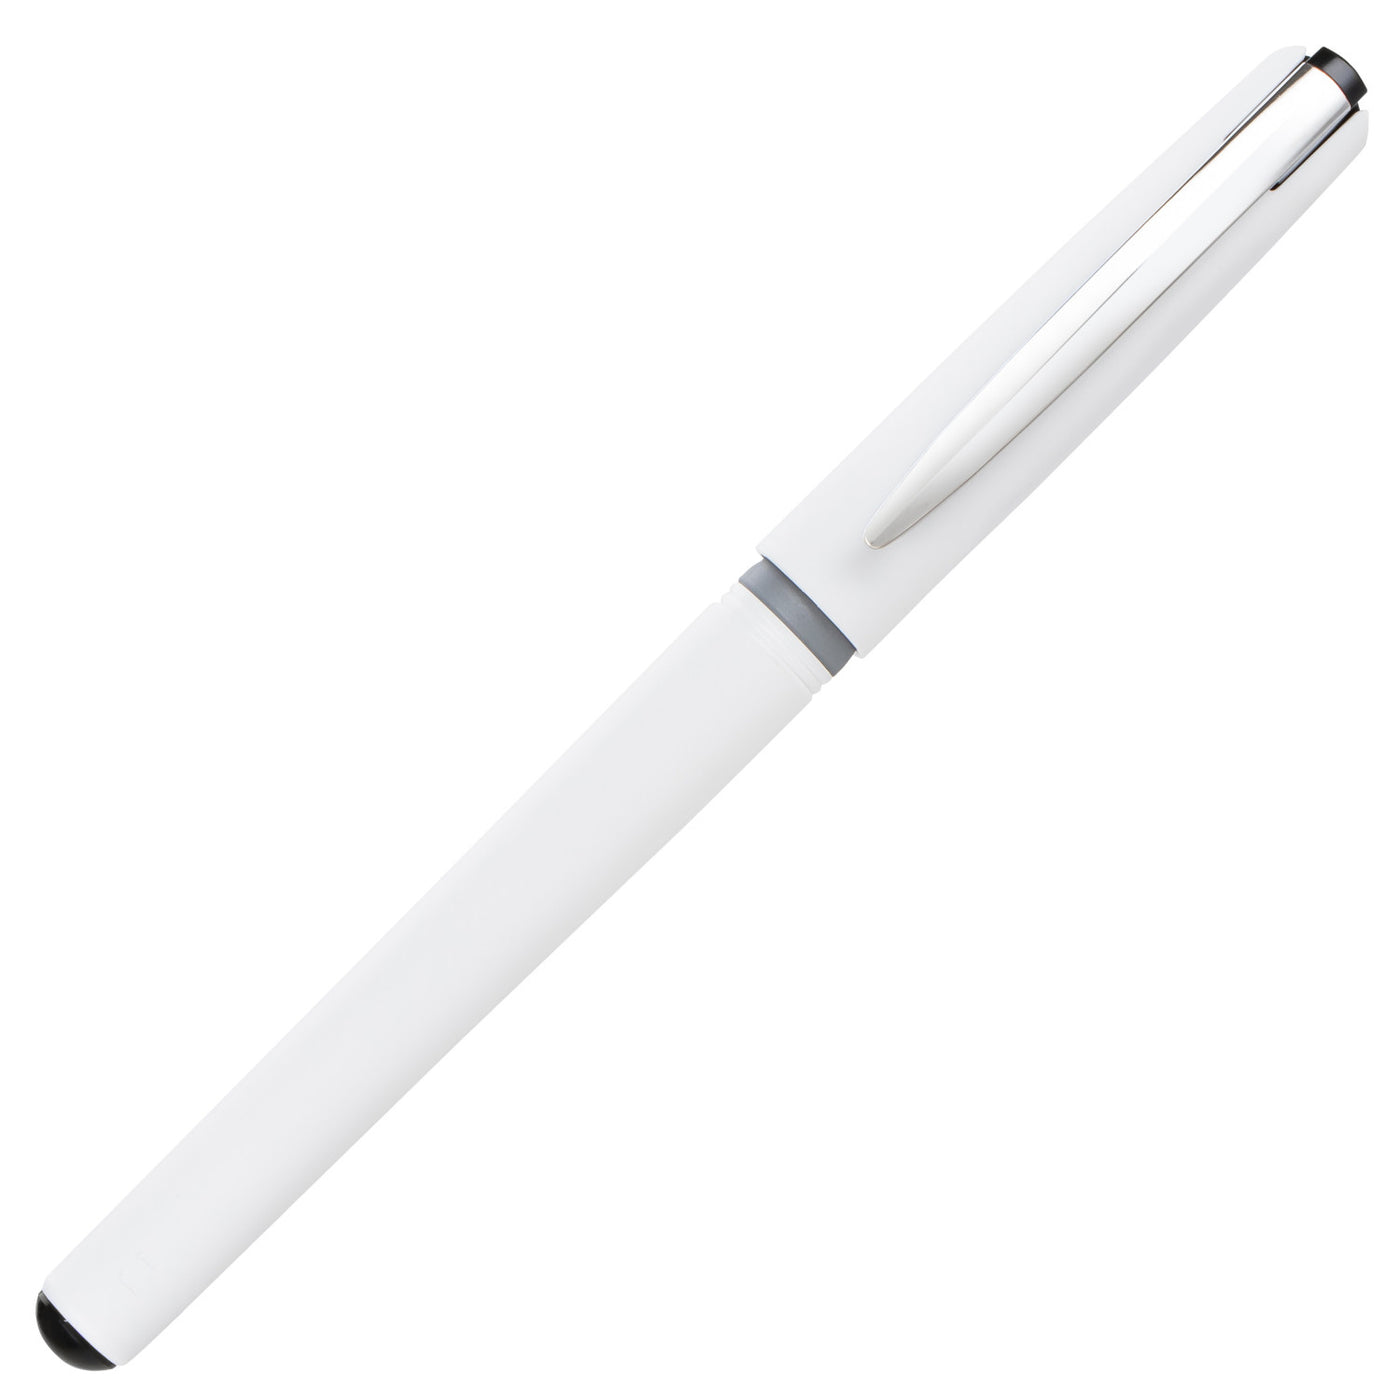 Pentel Floatune Rollerball Pen